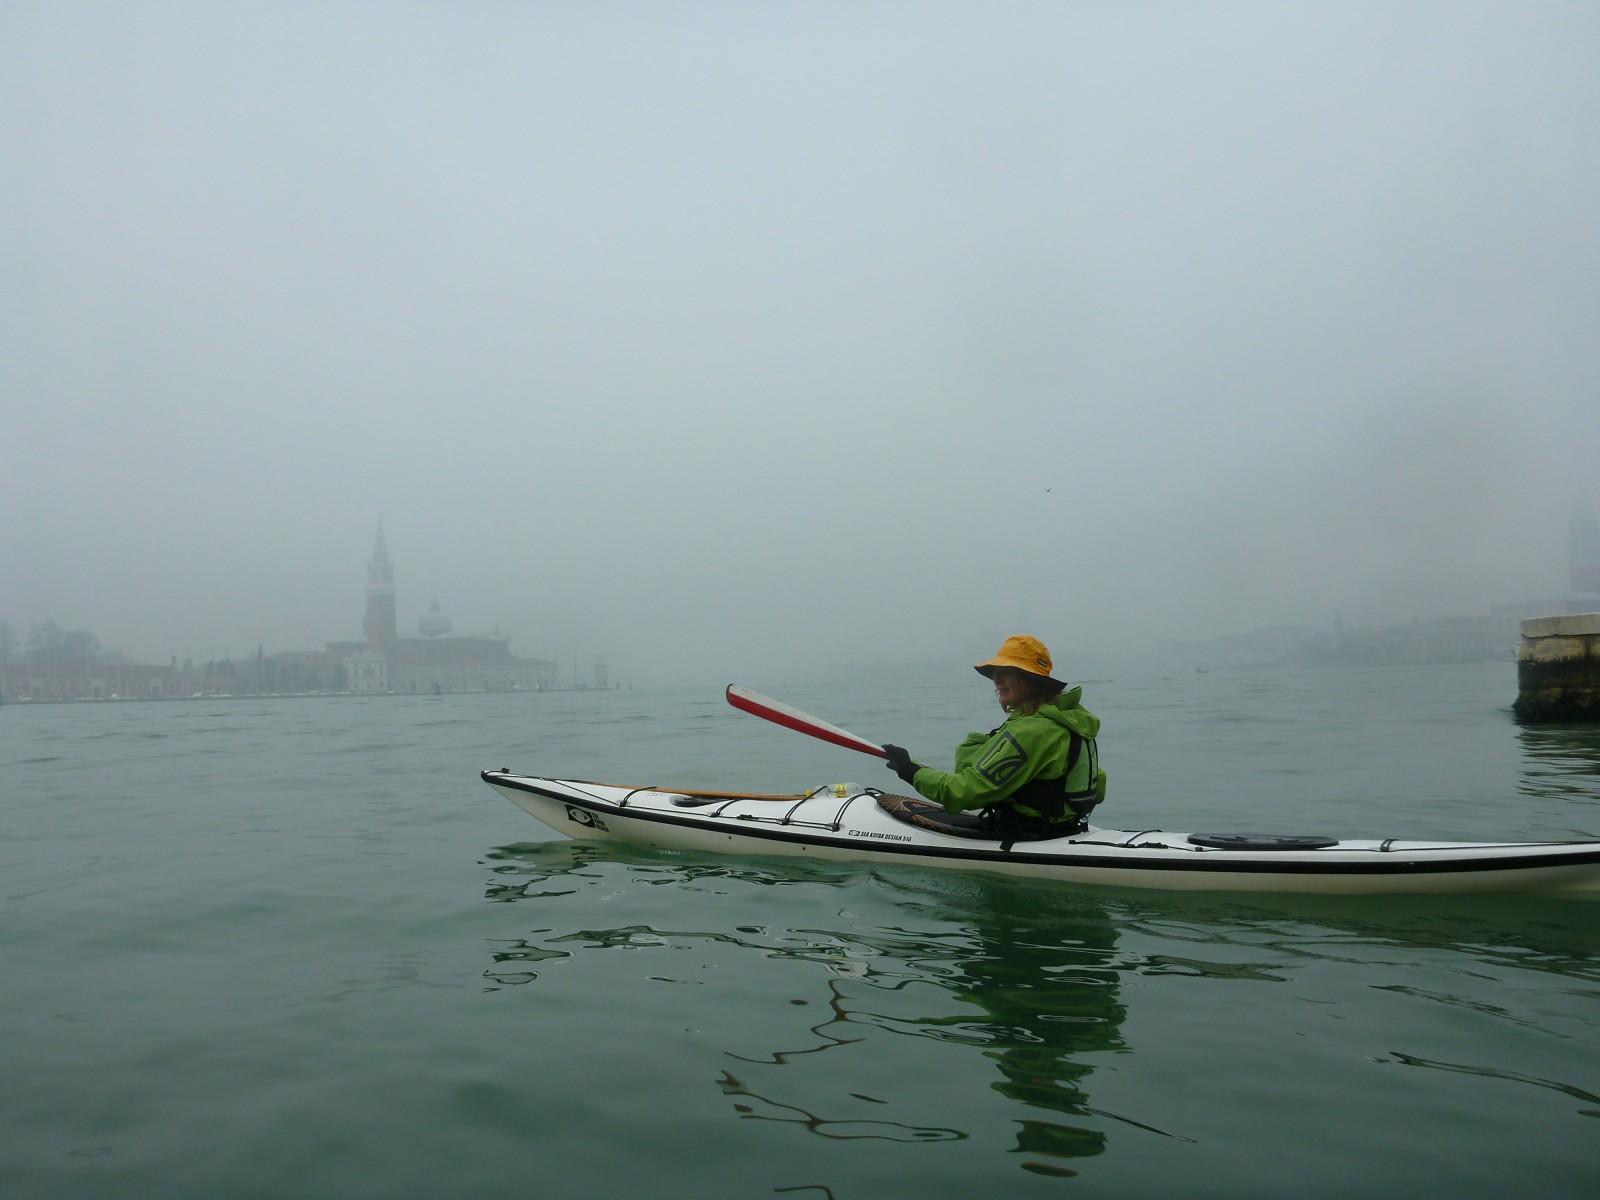 Loretta in Bacino San Marco foggy